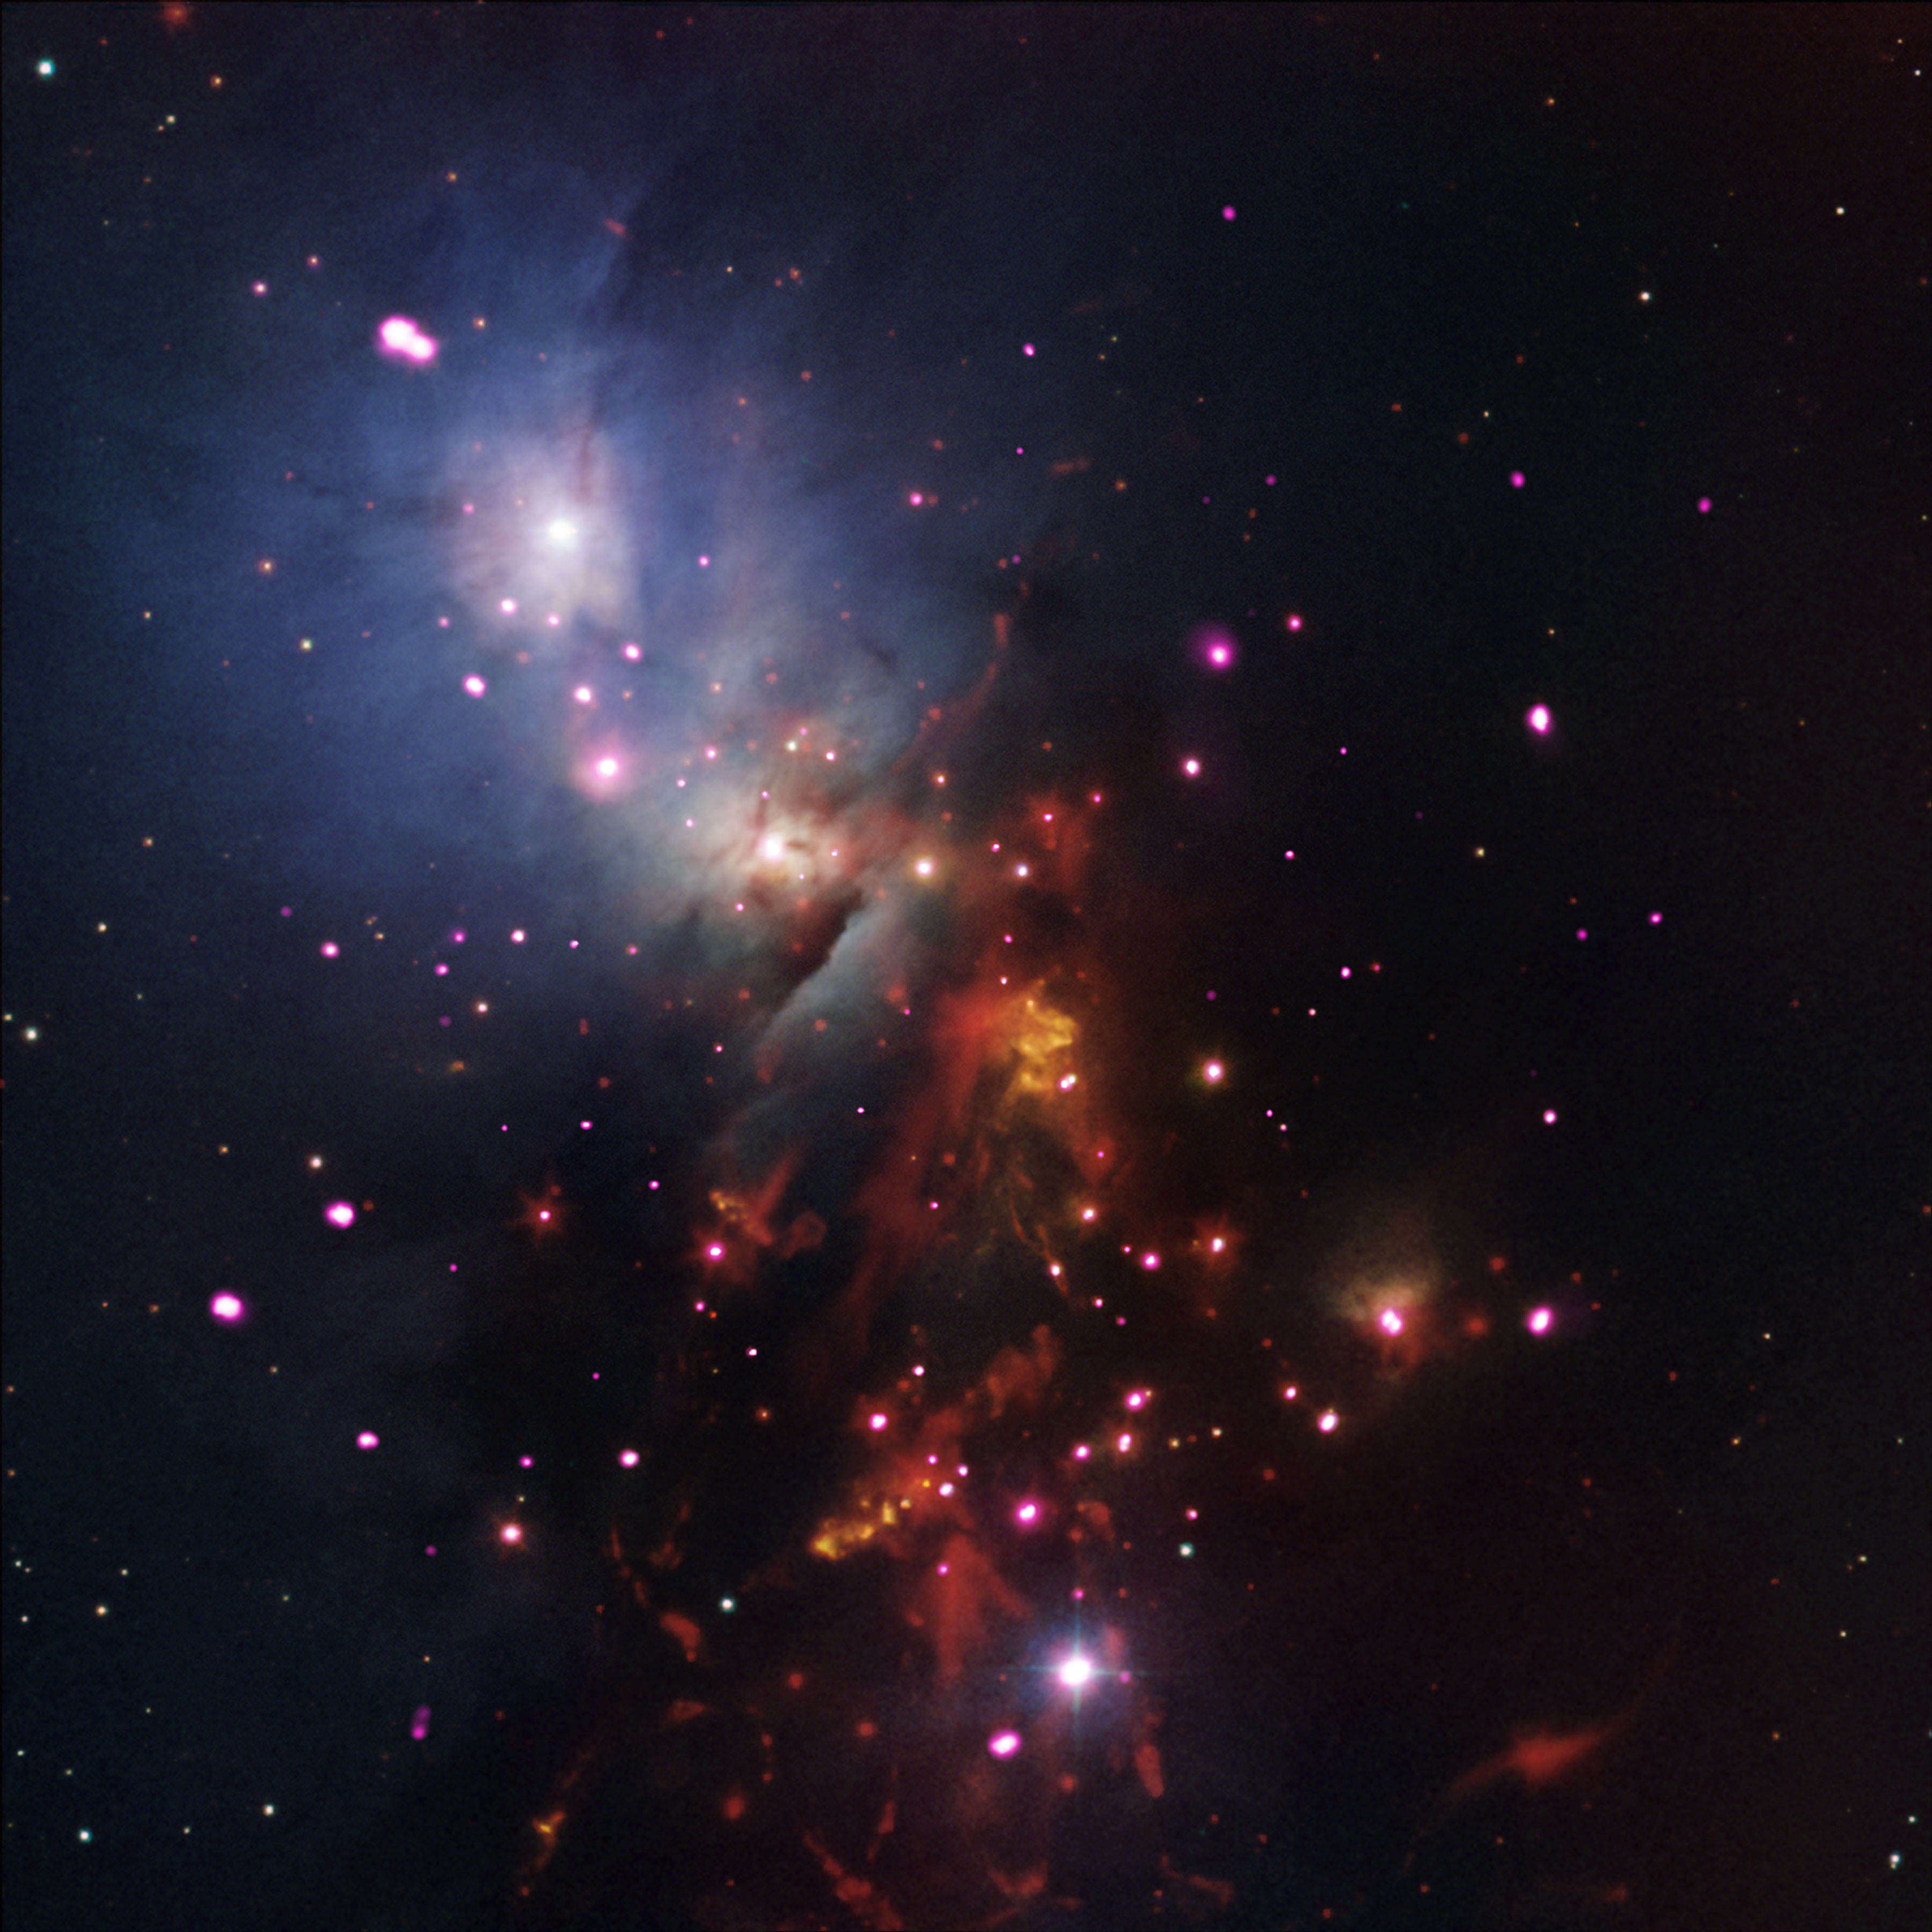 Credit: NASA/CXC/JPL-Caltech/NOAO/DSS